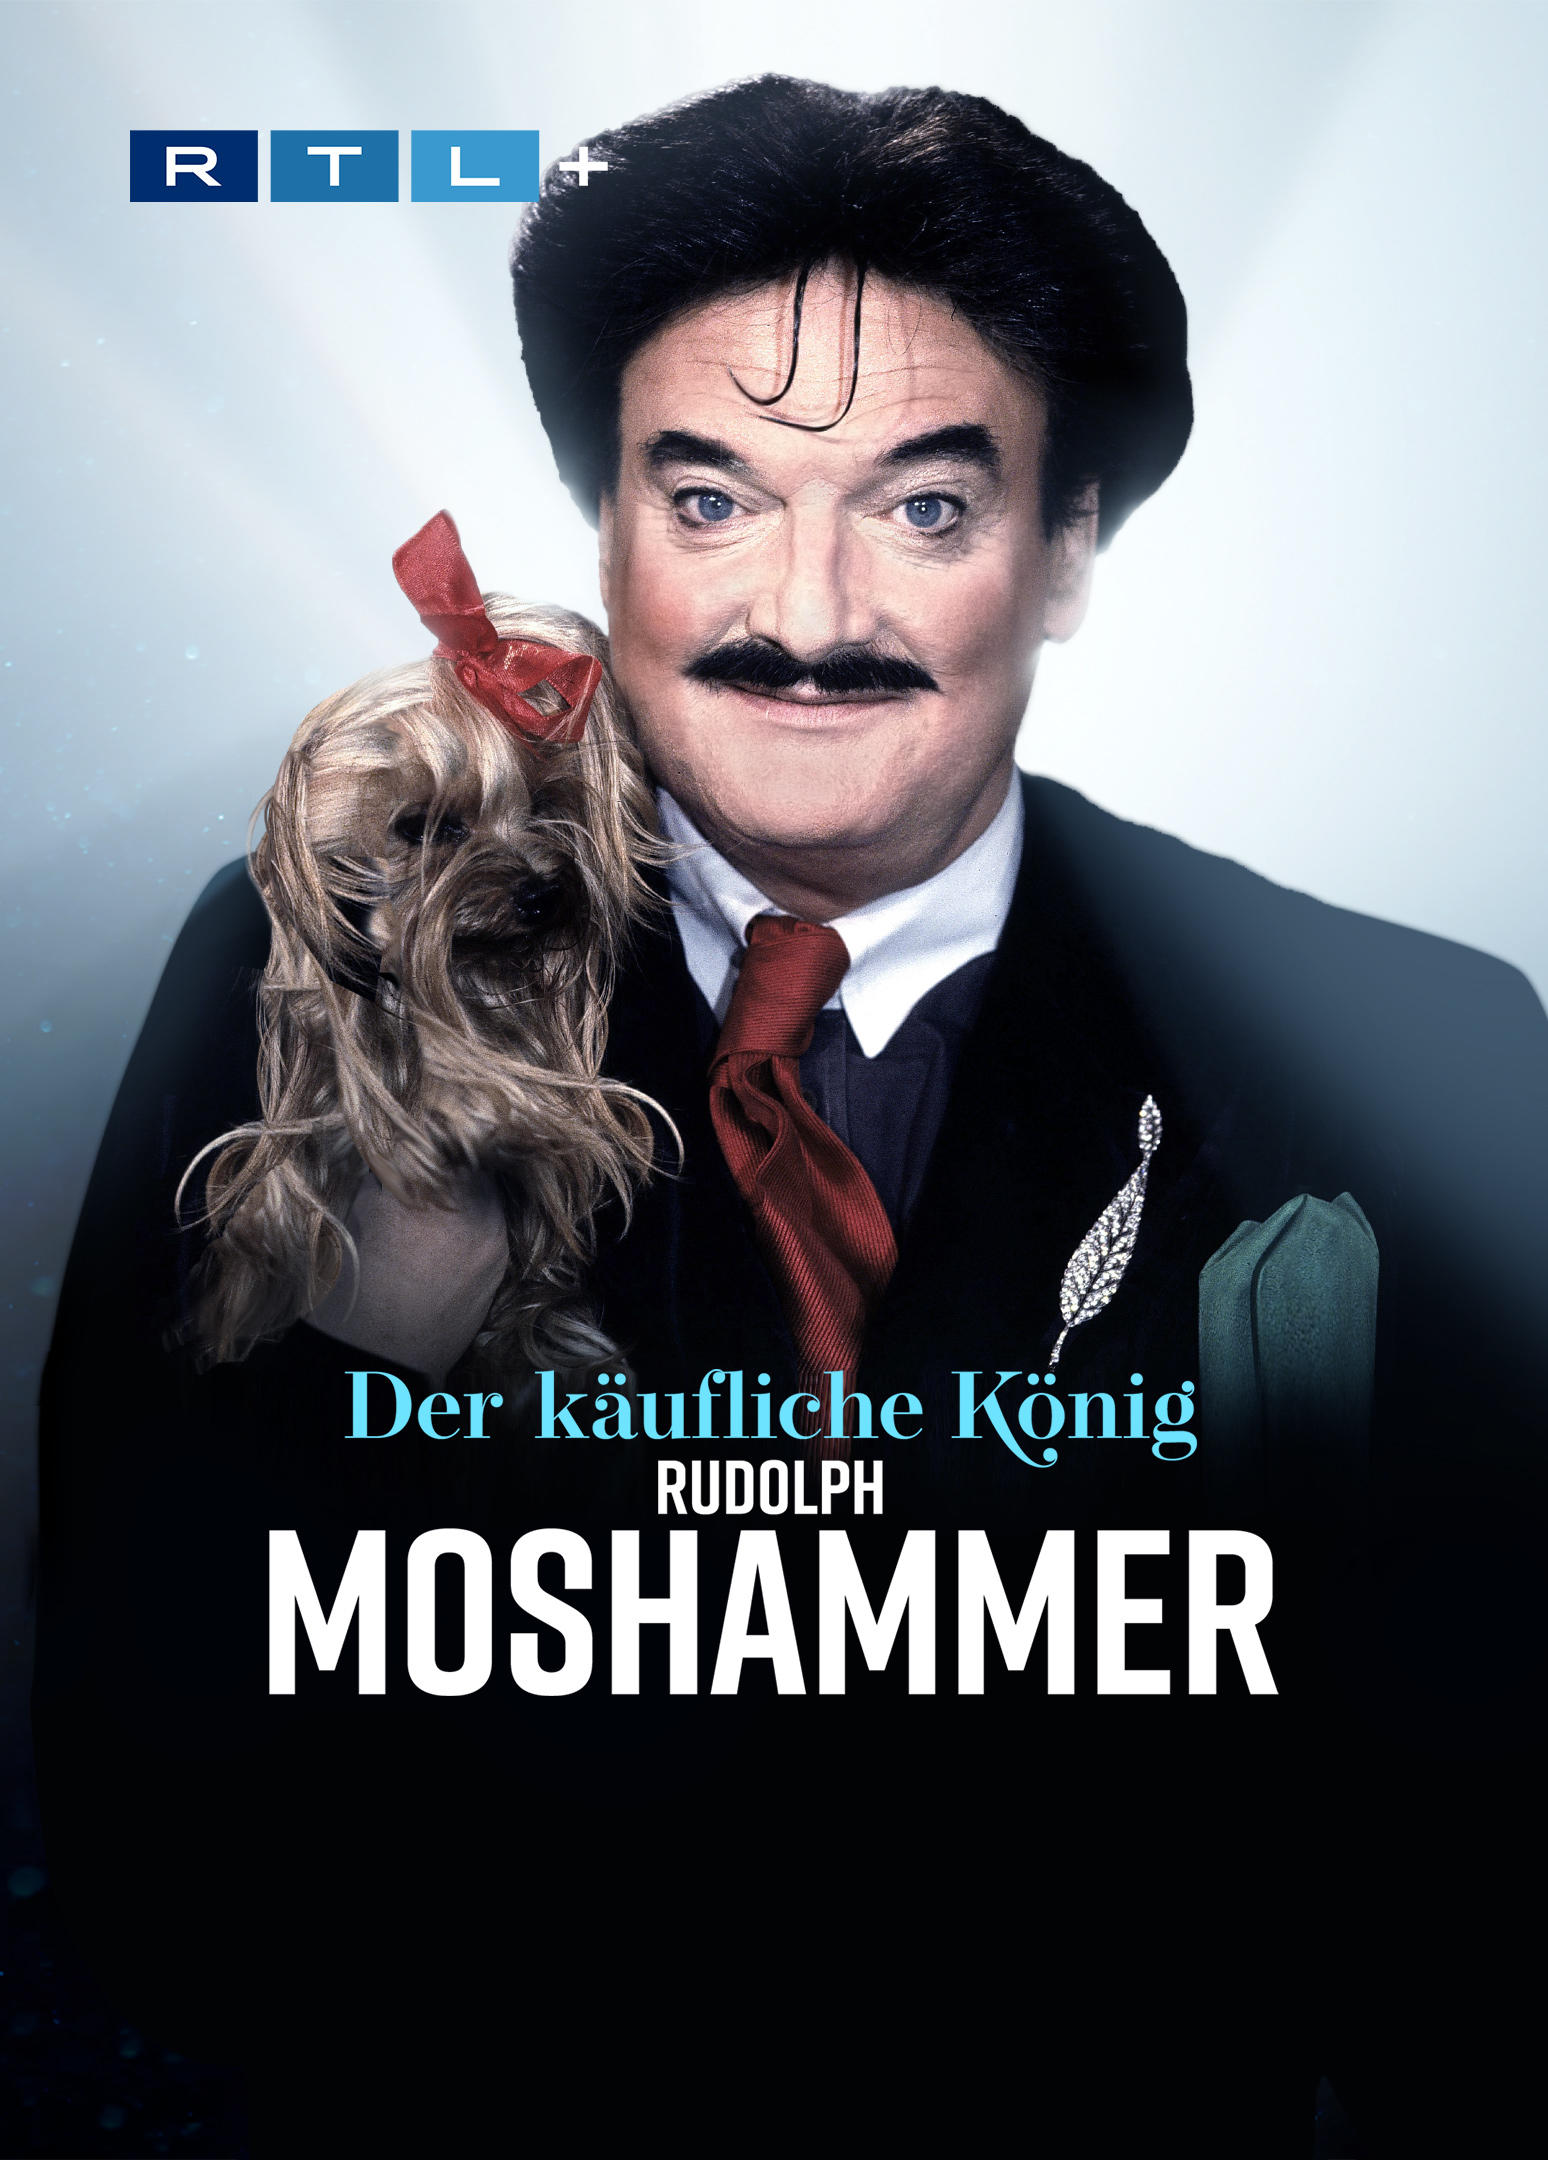 Rudolph Moshammer - Der käufliche König